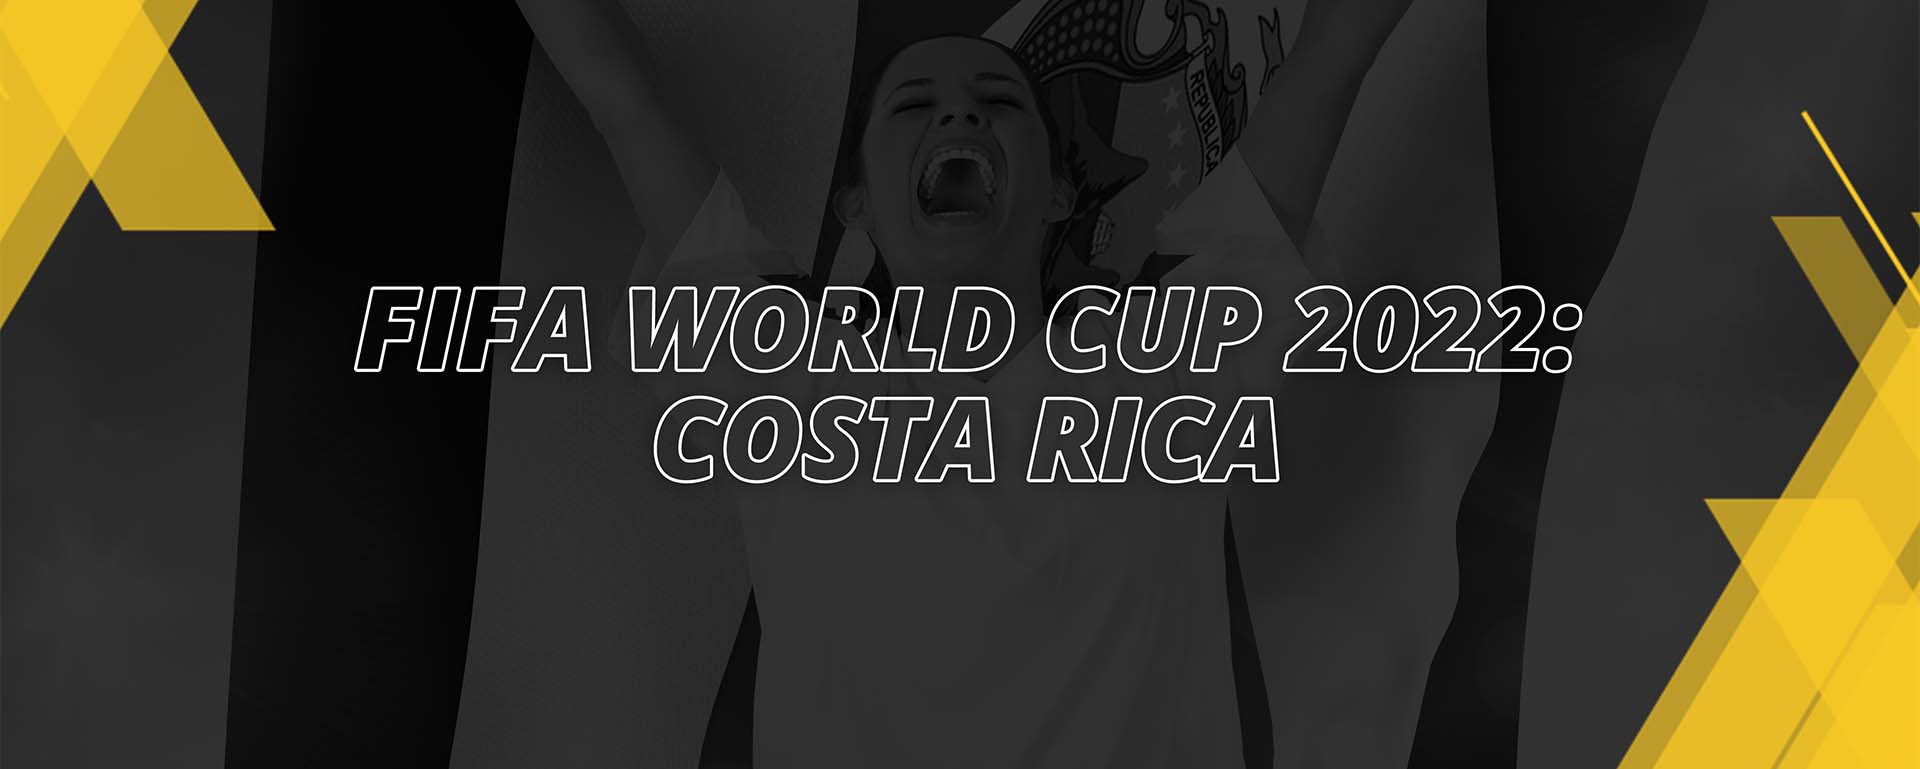 COSTA RICA – FIFA WORLD CUP QATAR 2022 – FAN’S COMPENDIUM